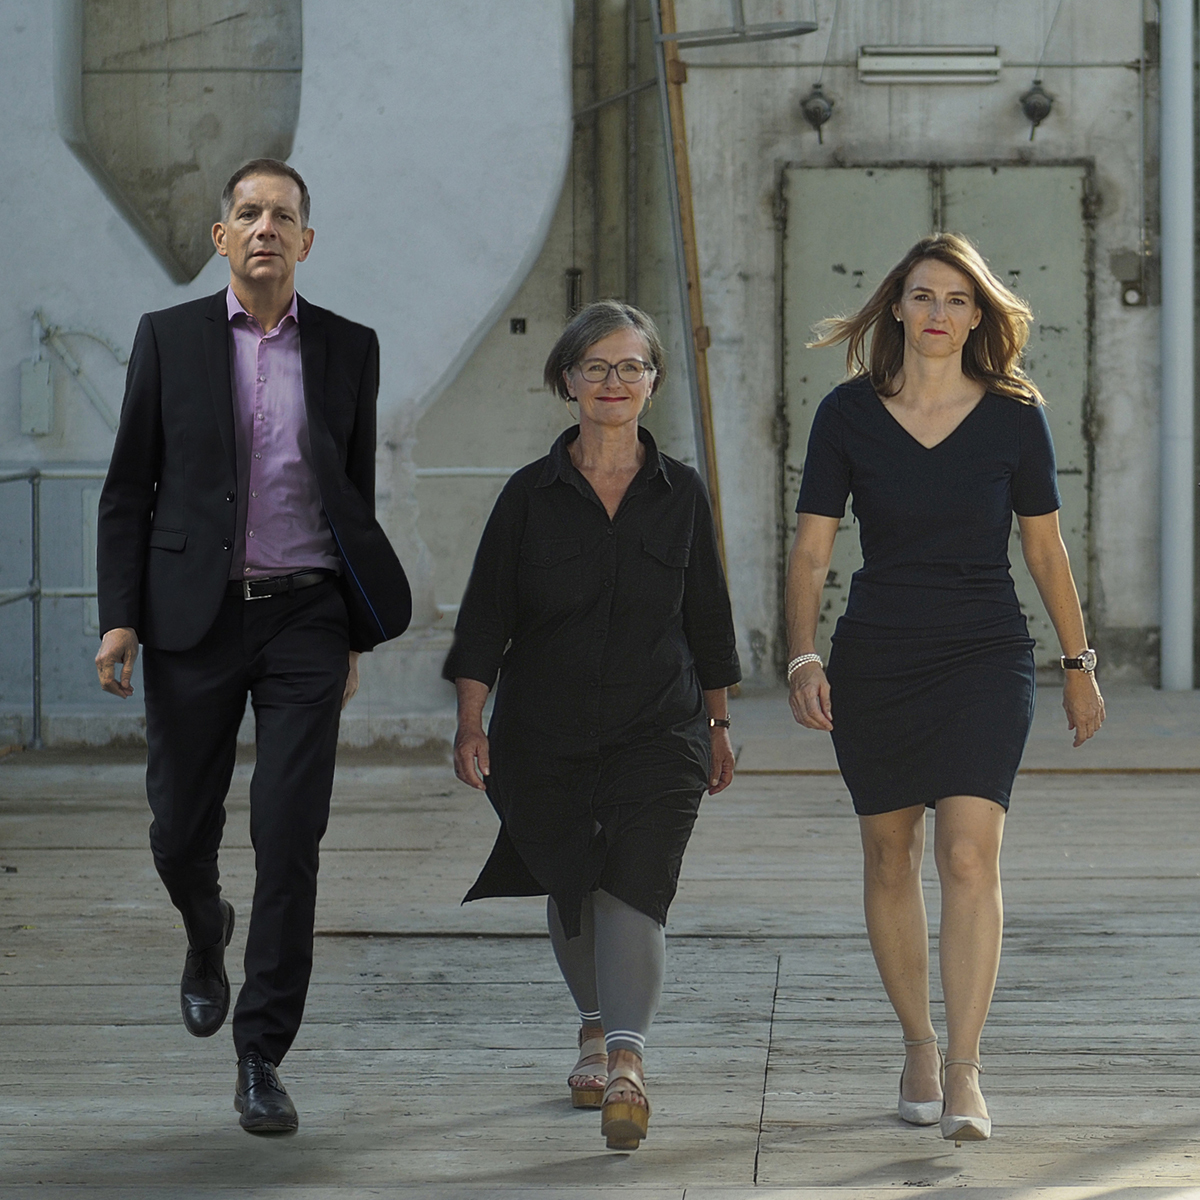 Ralph Kreuzer, Susanne Bandi und Franziska Ingol laufen im Gleichschritt der Kamera entgegen.